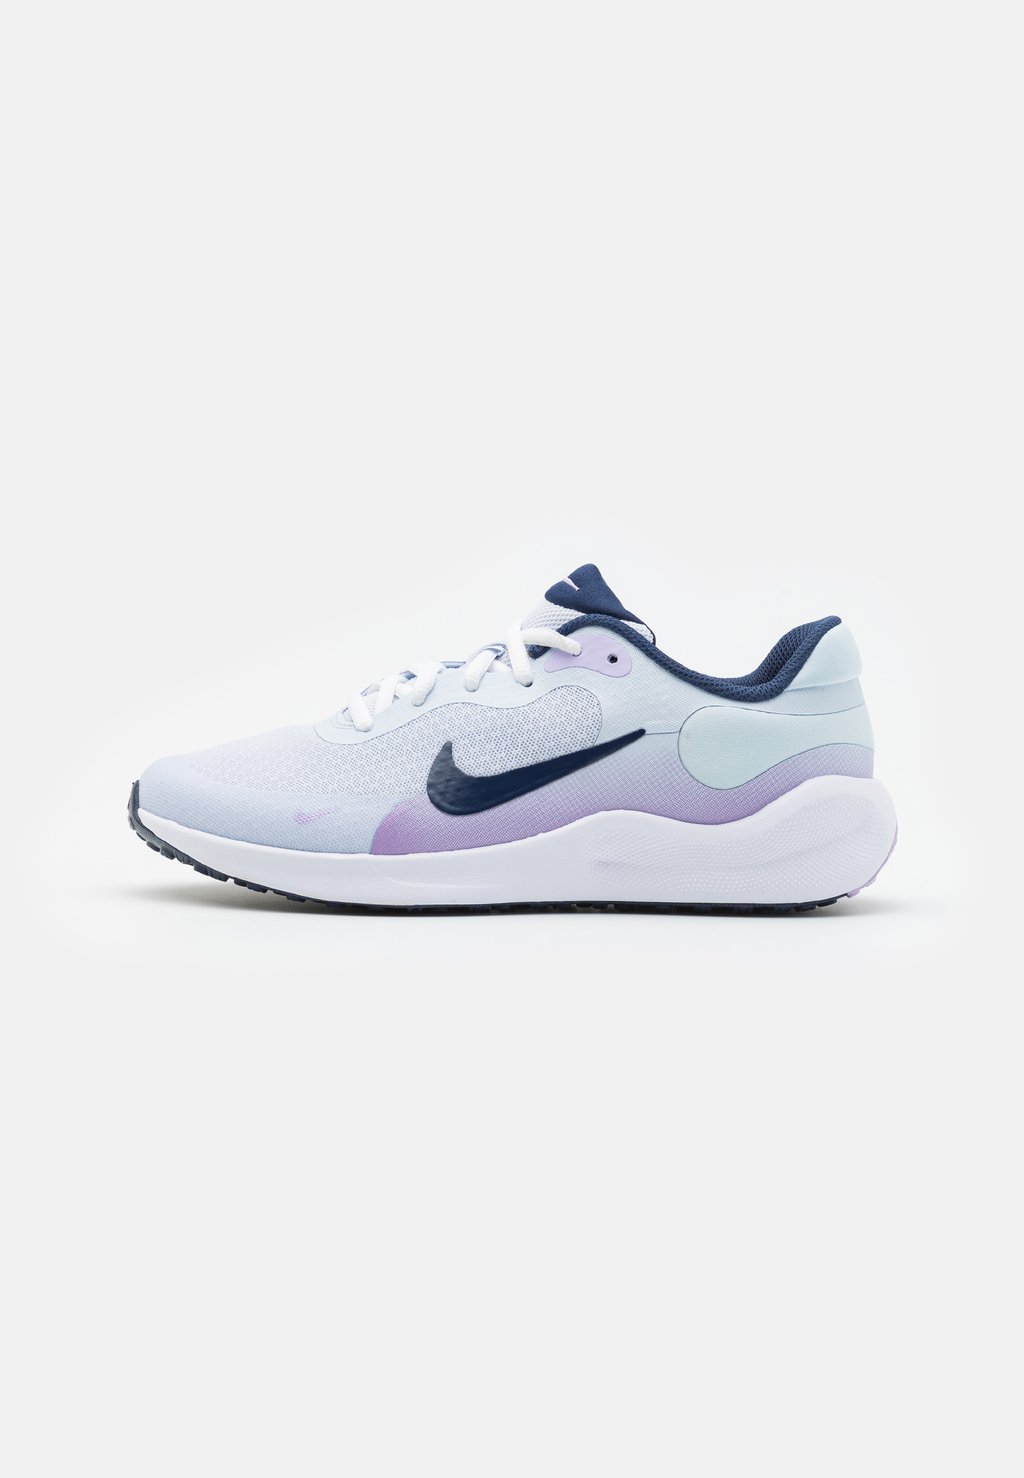 Нейтральные кроссовки REVOLUTION 7 UNISEX Nike, цвет football grey/midnight navy/lilac bloom/lilac